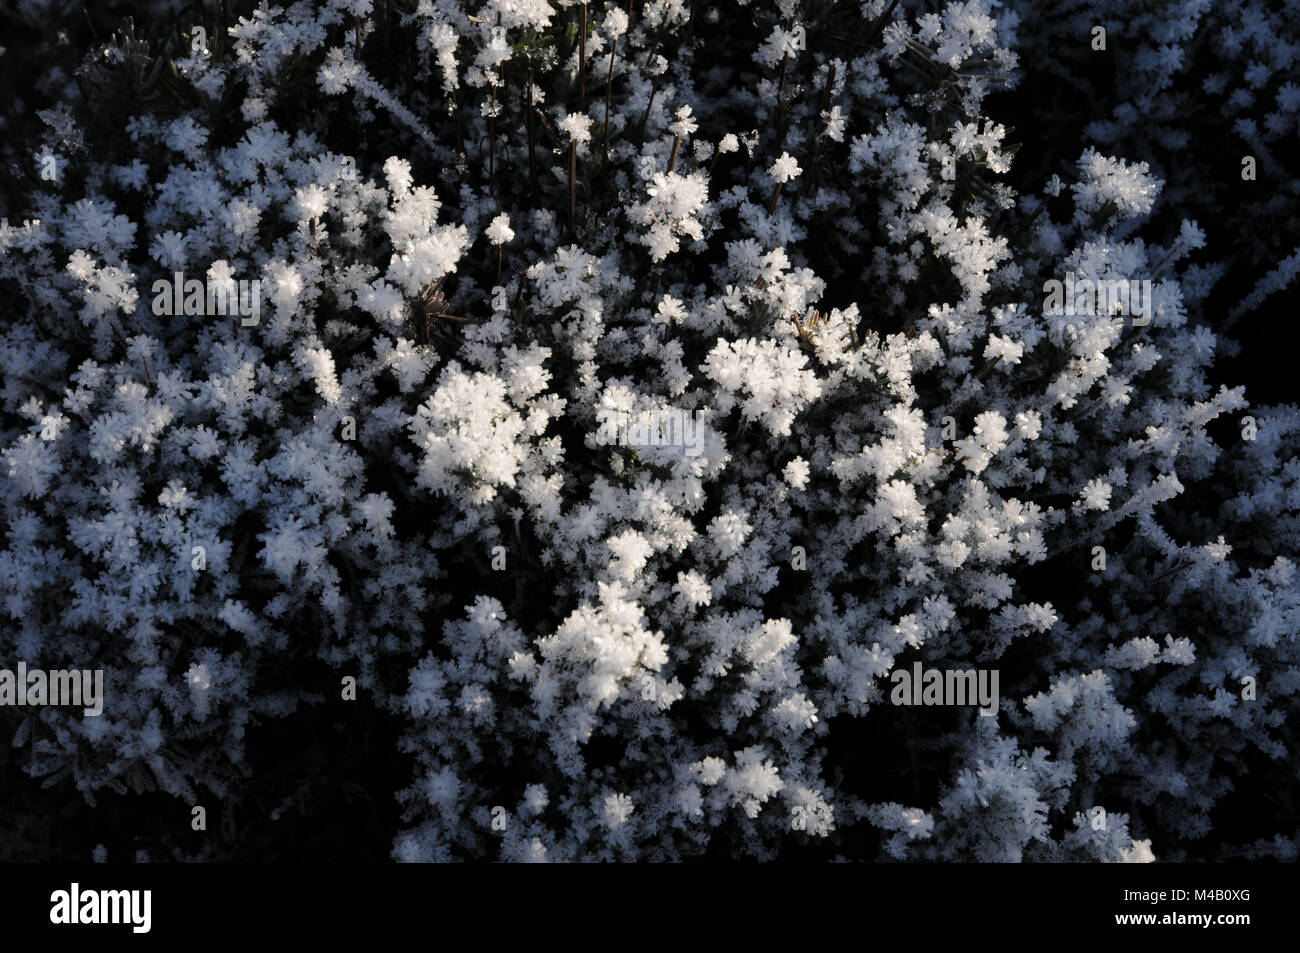 Aster novi-belgii, New York aster, white frost Stock Photo